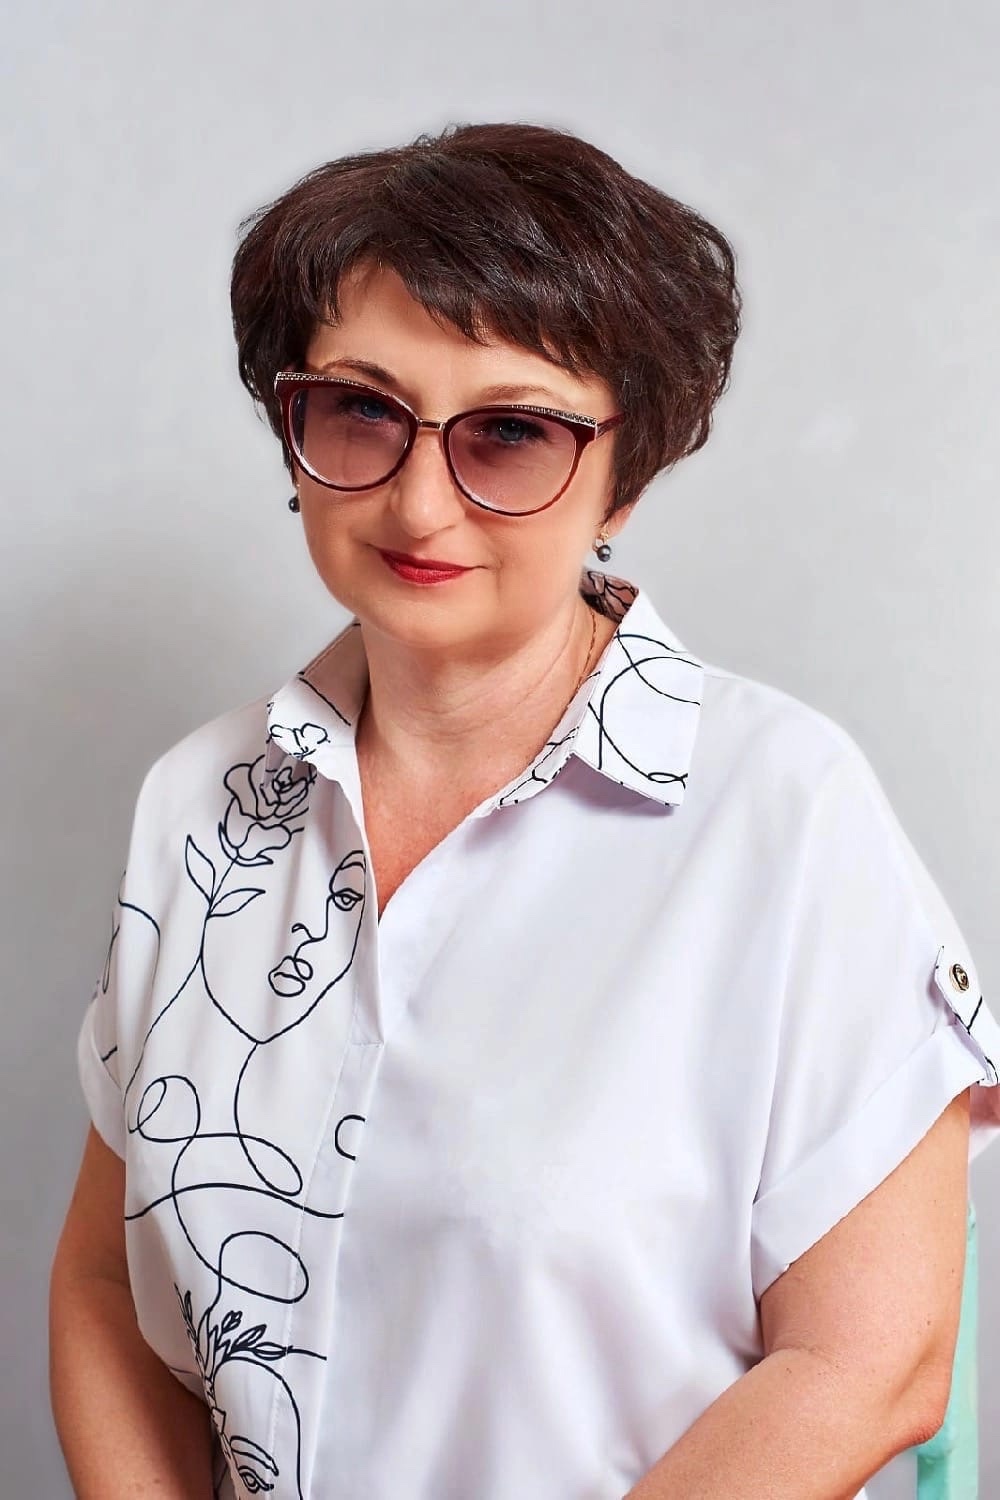 Романенко Елена Николаевна.